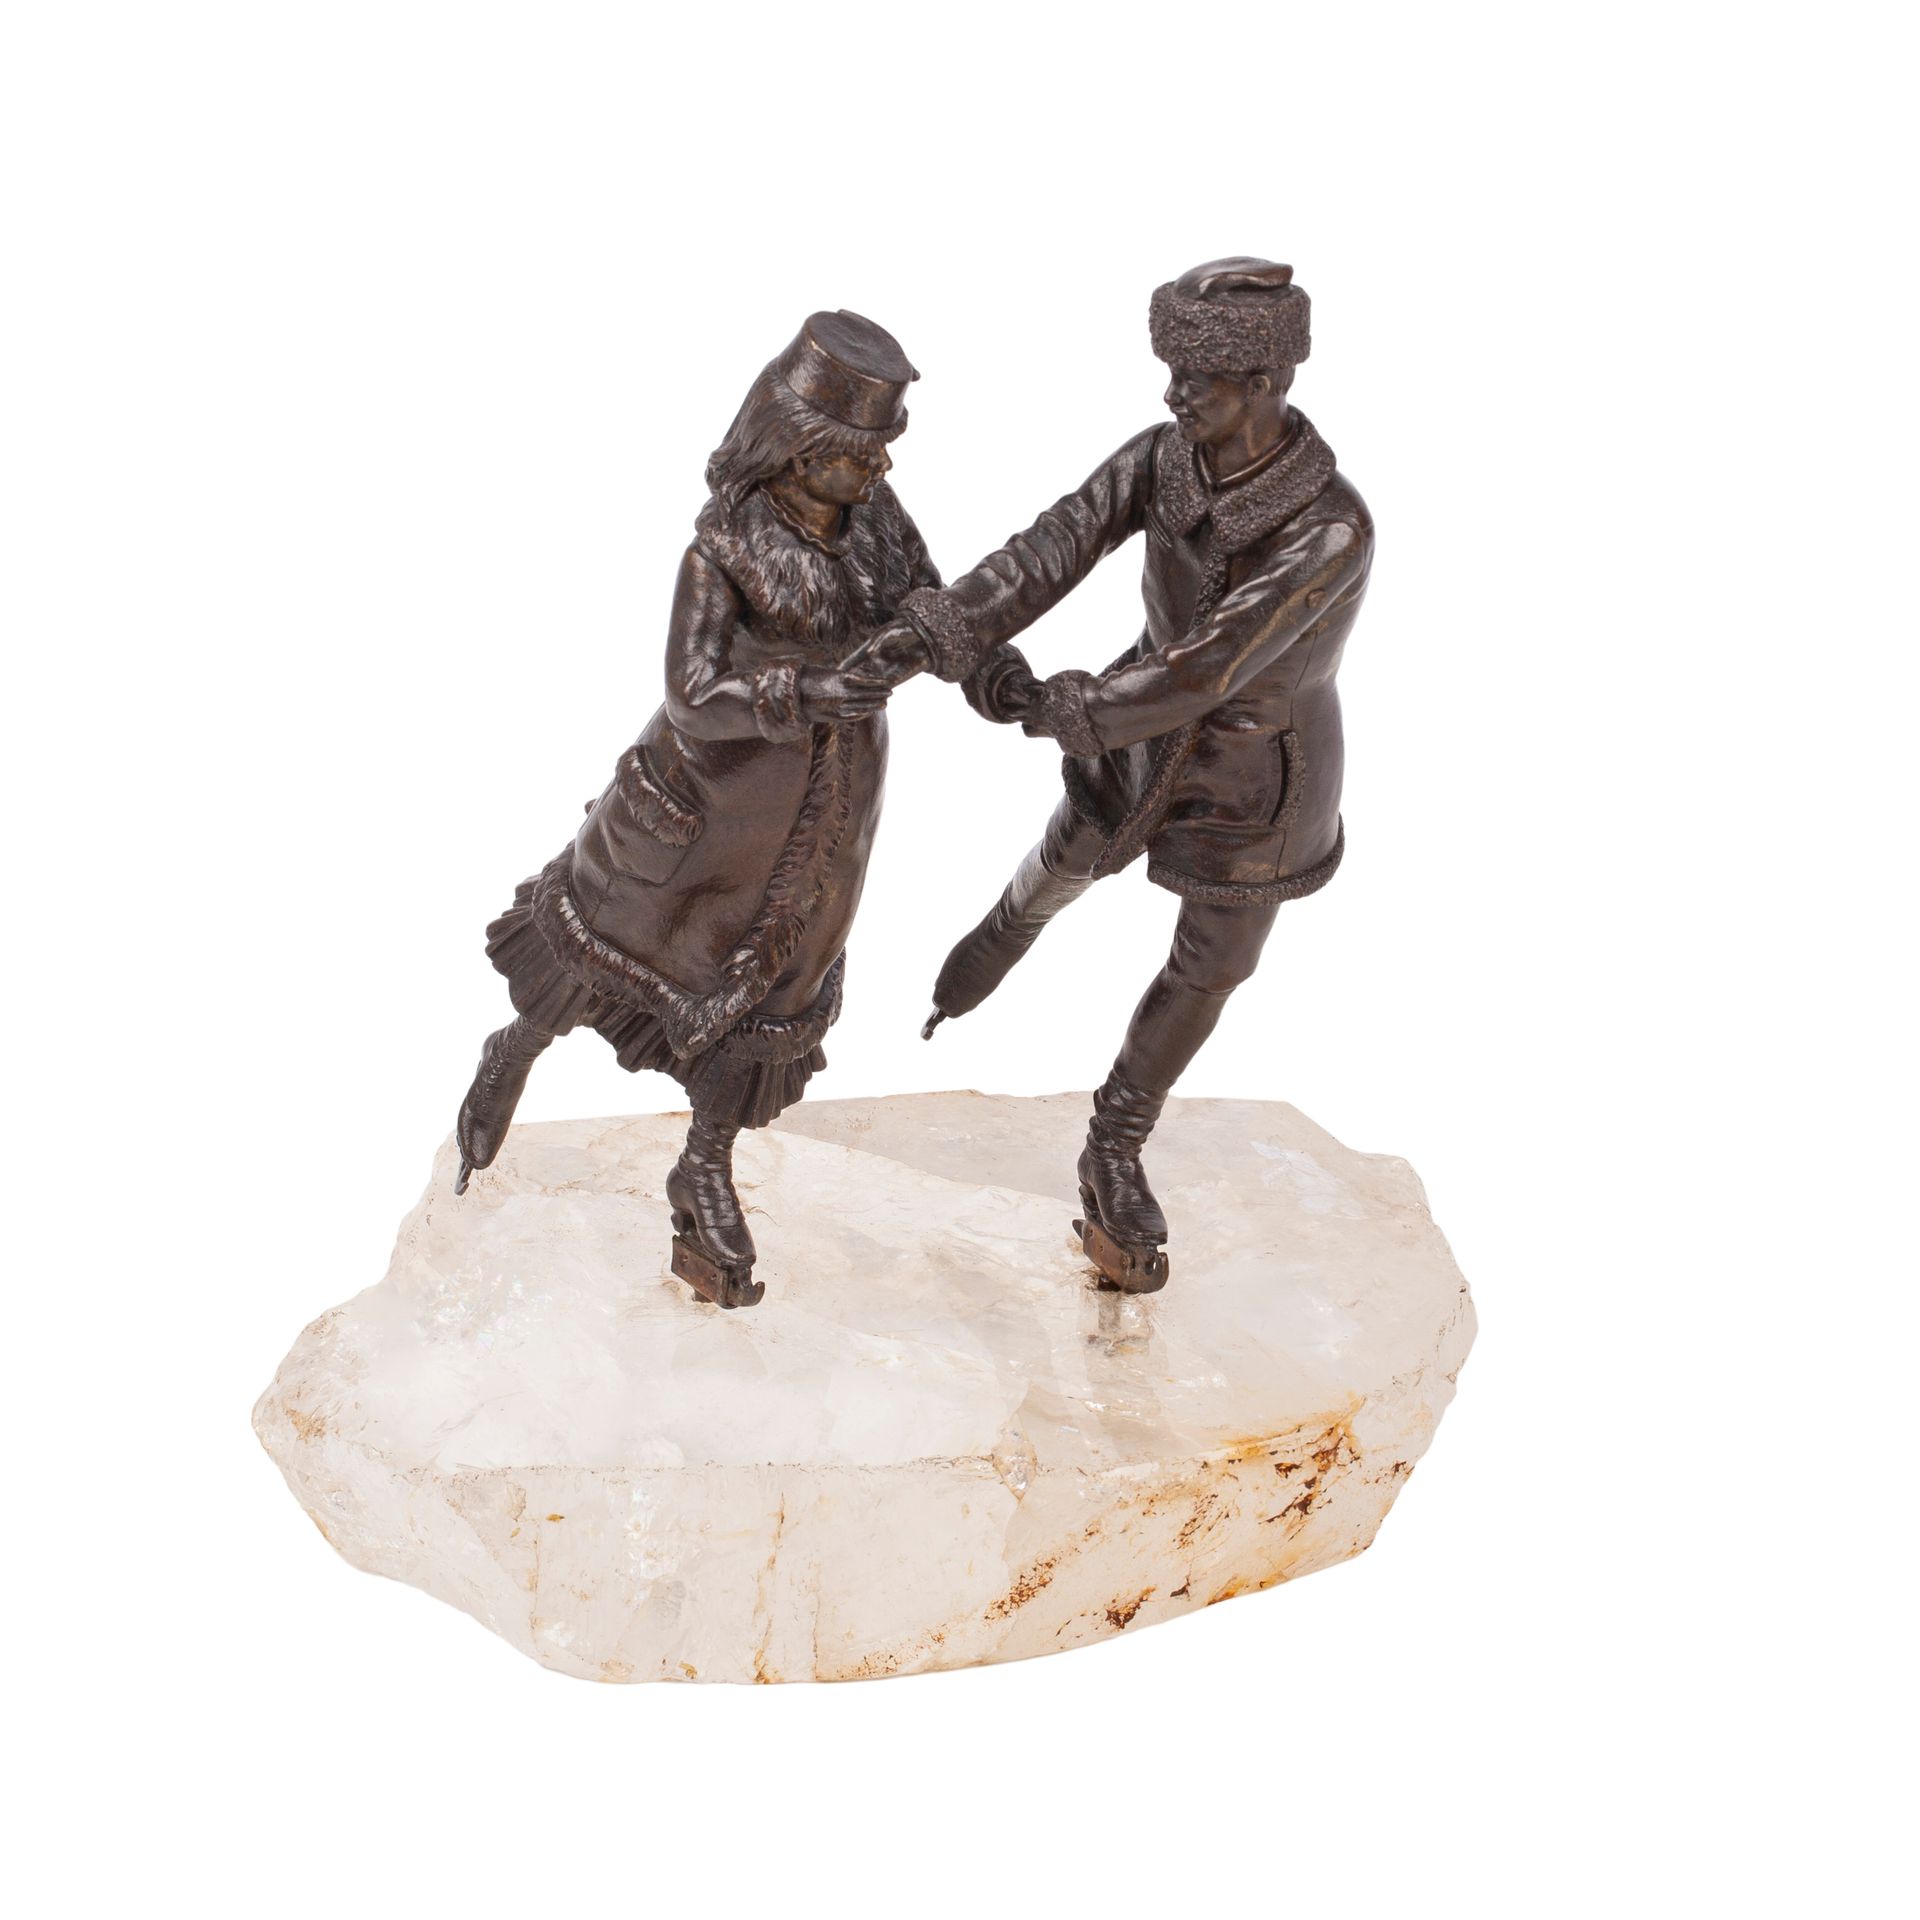 Null 罕见的俄罗斯雕塑《在滑冰场》。来自K.F. Werfel工厂在1890年代根据雕塑家V.Y. Grachev的模型制作的一系列组合装饰品（青铜和石英的&hellip;